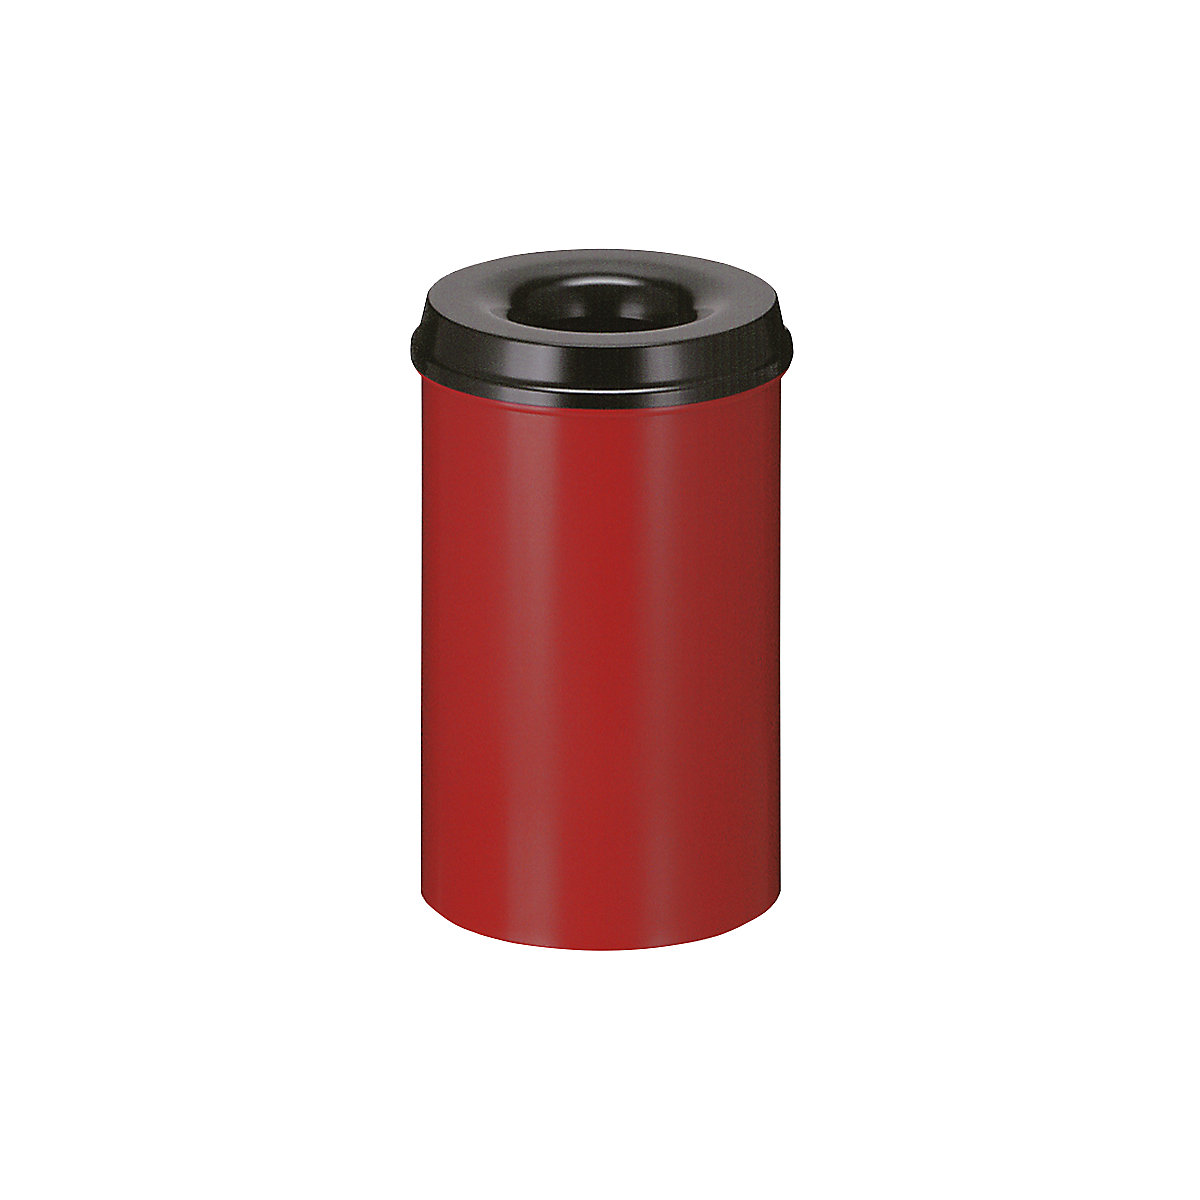 Bezpečnostní koš na papír, ocel, samozhášecí, objem 20 l, v x Ø 426 x 260 mm, korpus červená / hasicí hlava černá